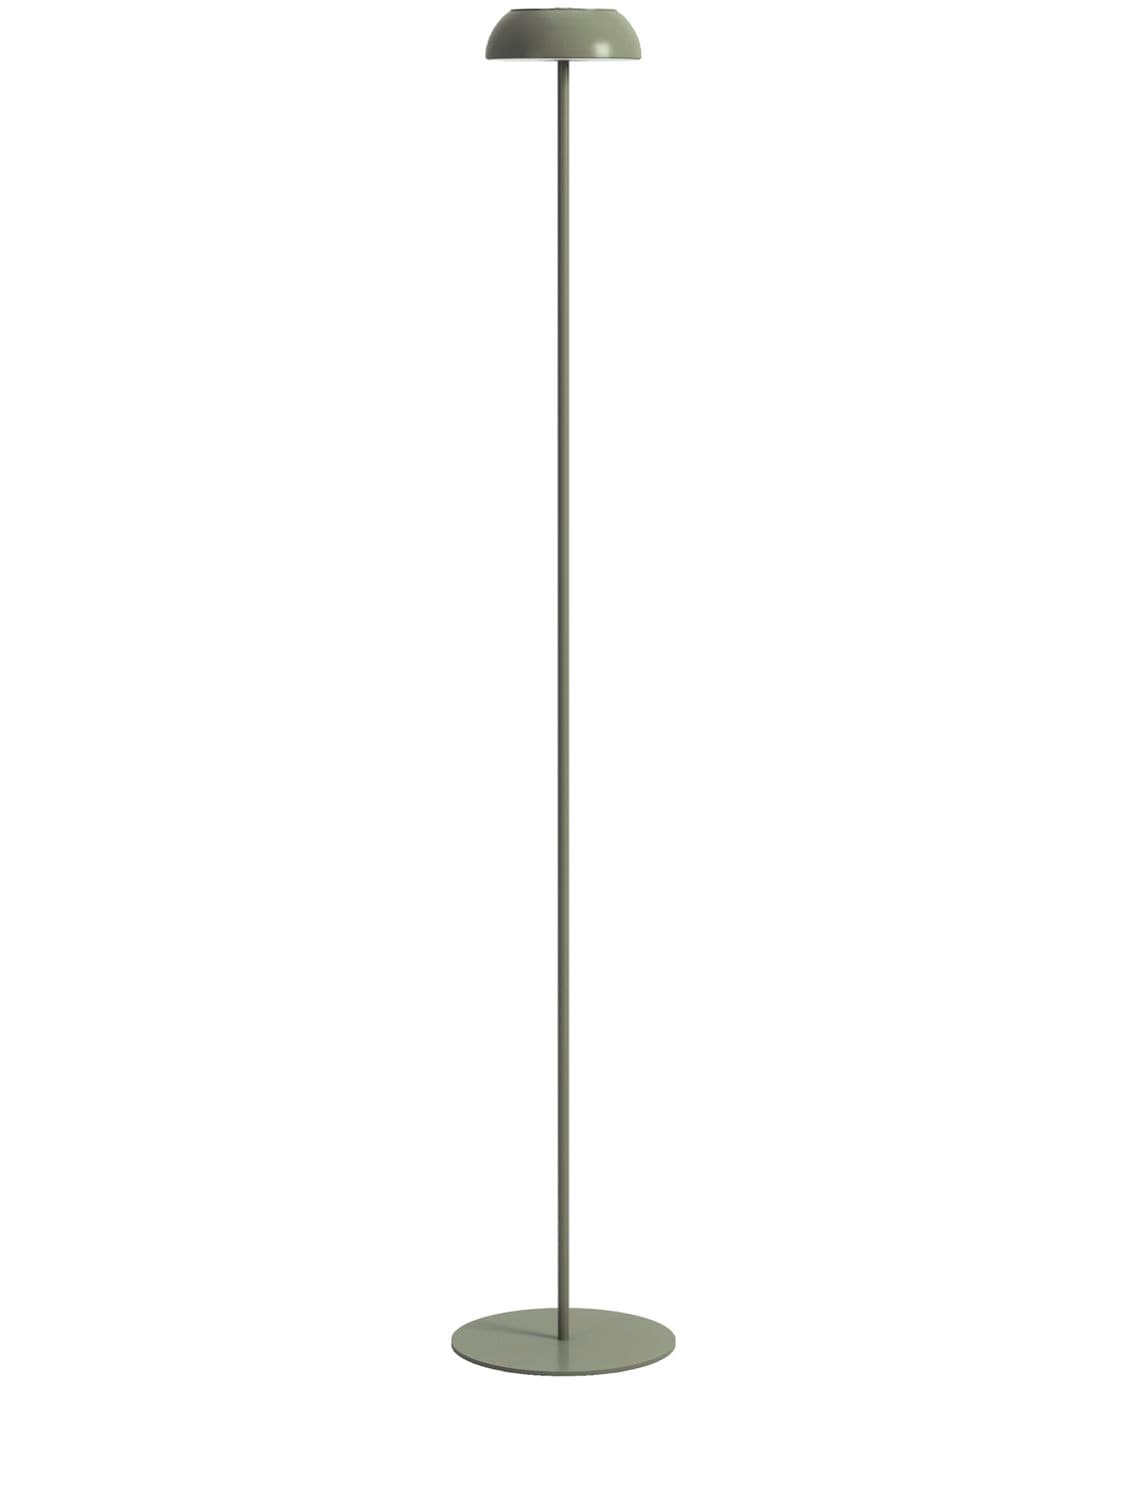 Axolight Float Floor Lamp In Green